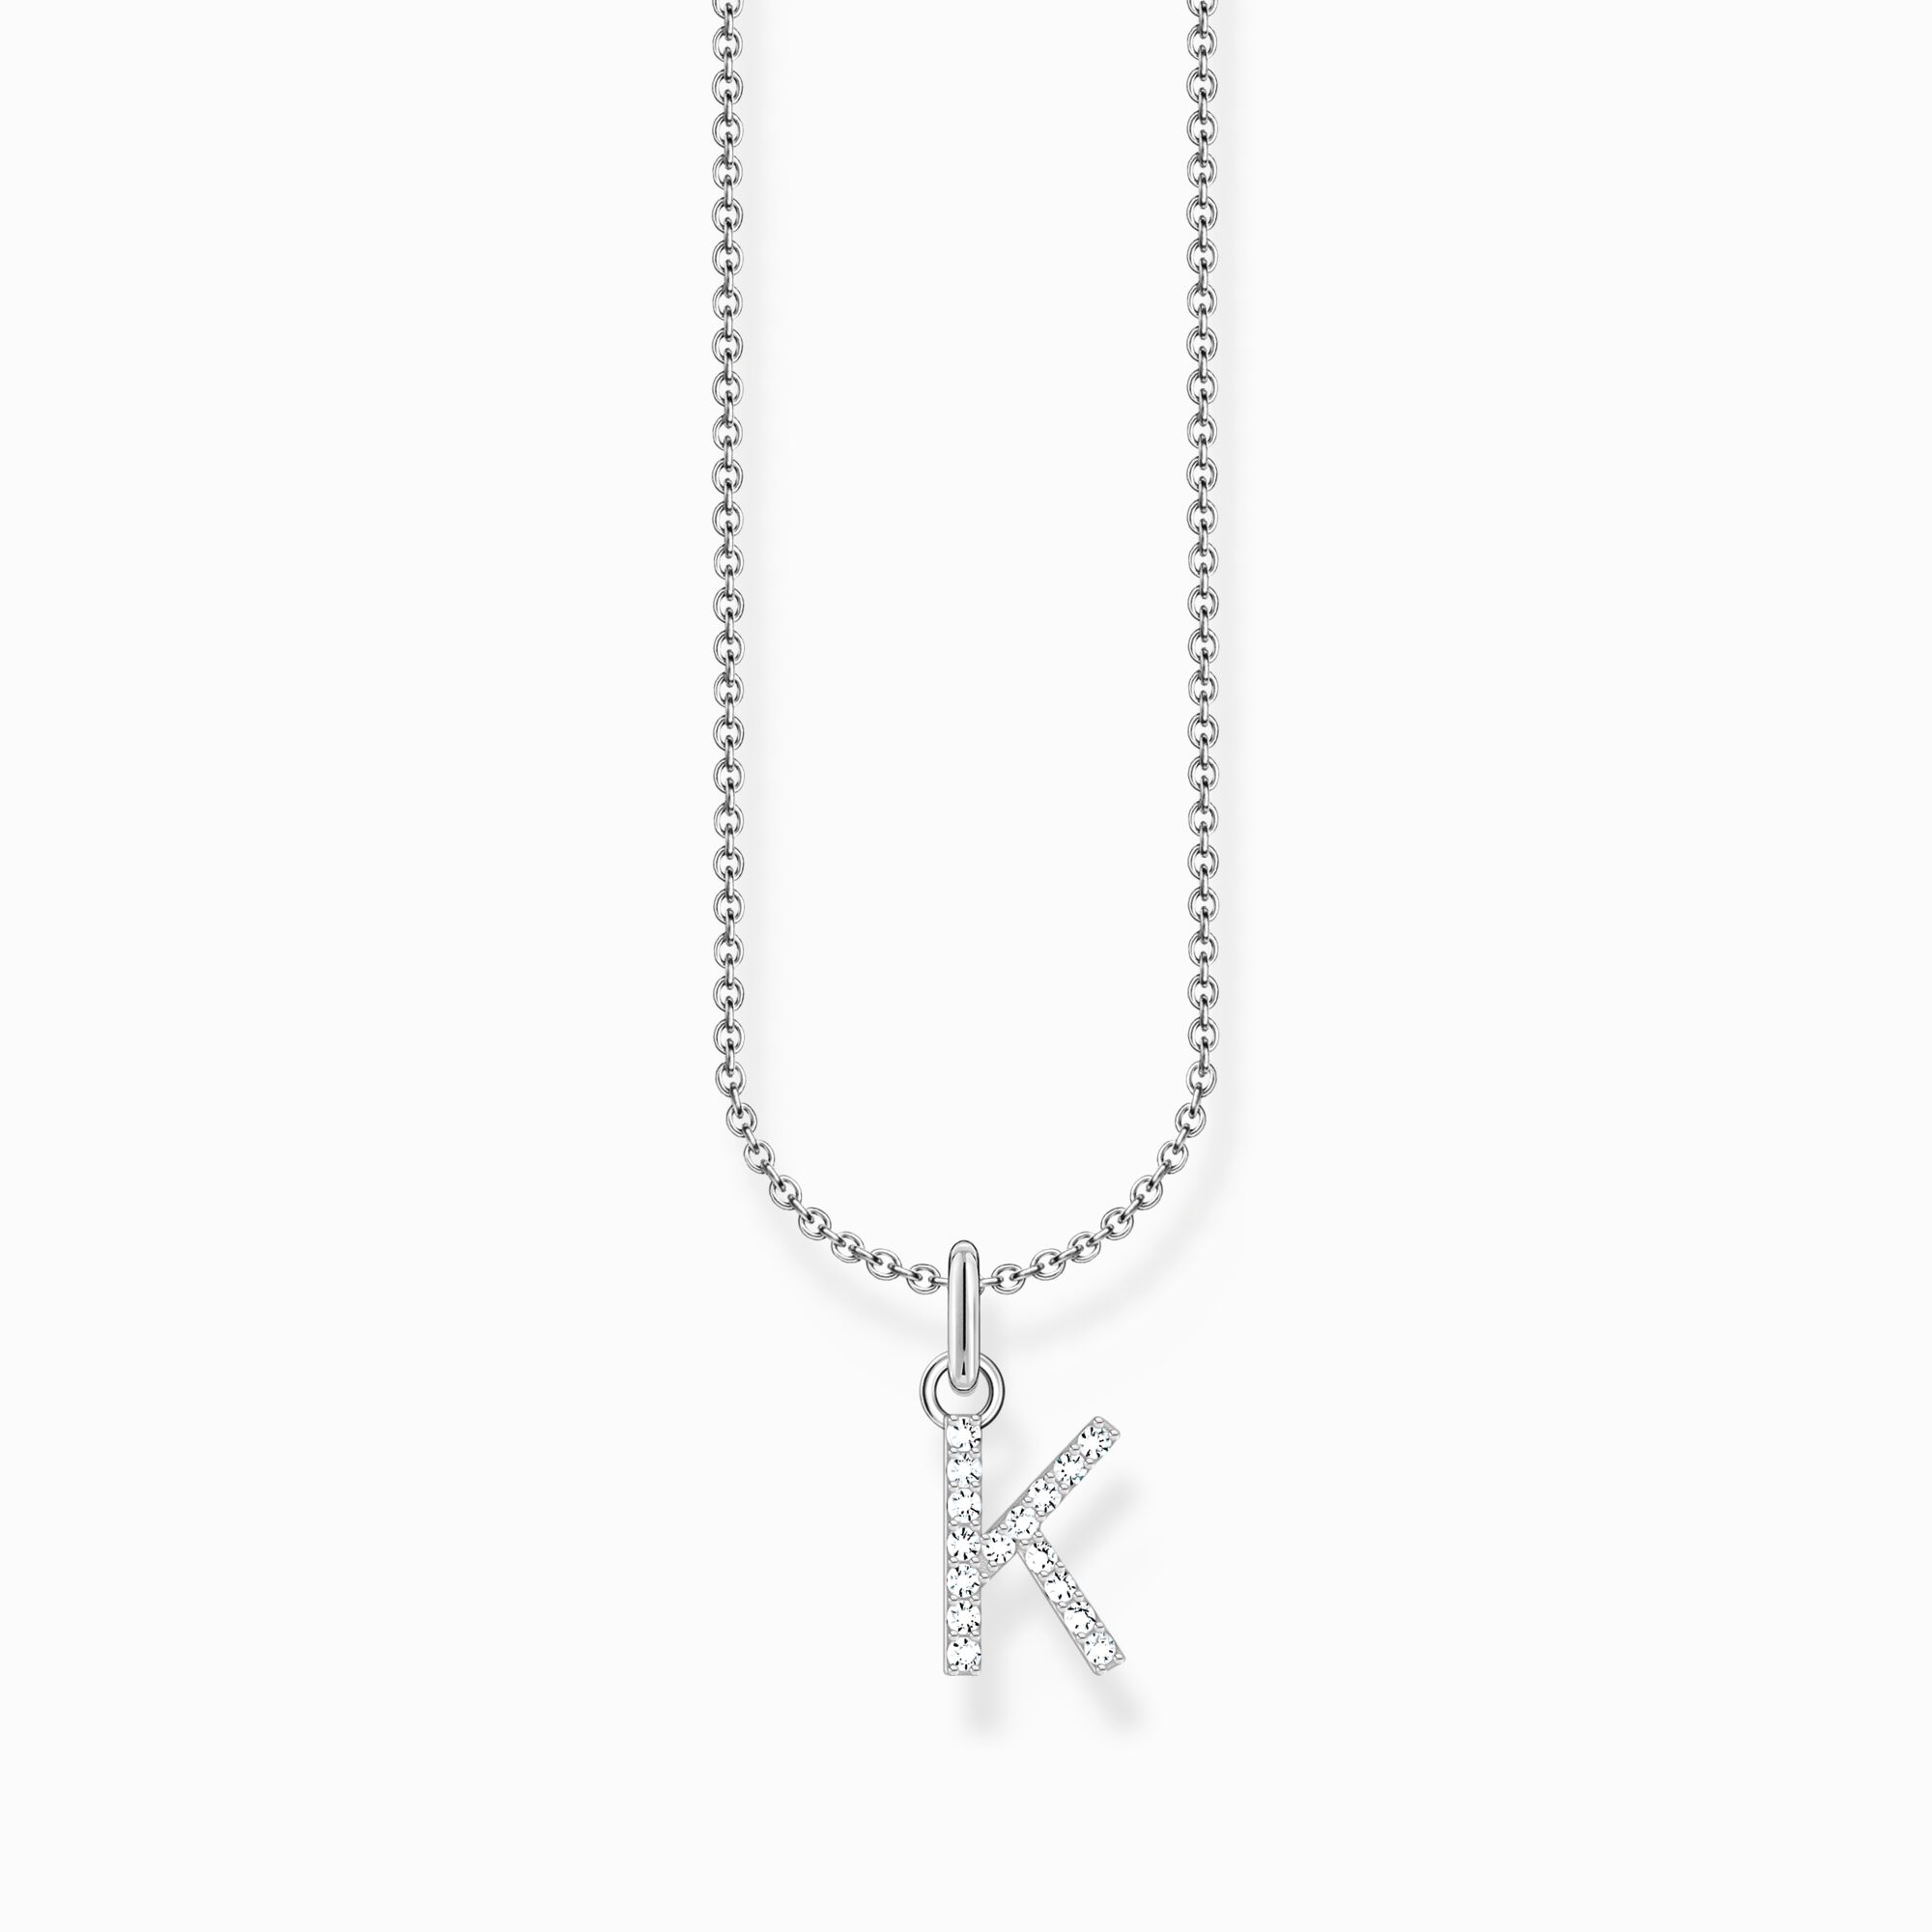 Halsband med bokstaven K, silver ur kollektionen Charming Collection i THOMAS SABO:s onlineshop